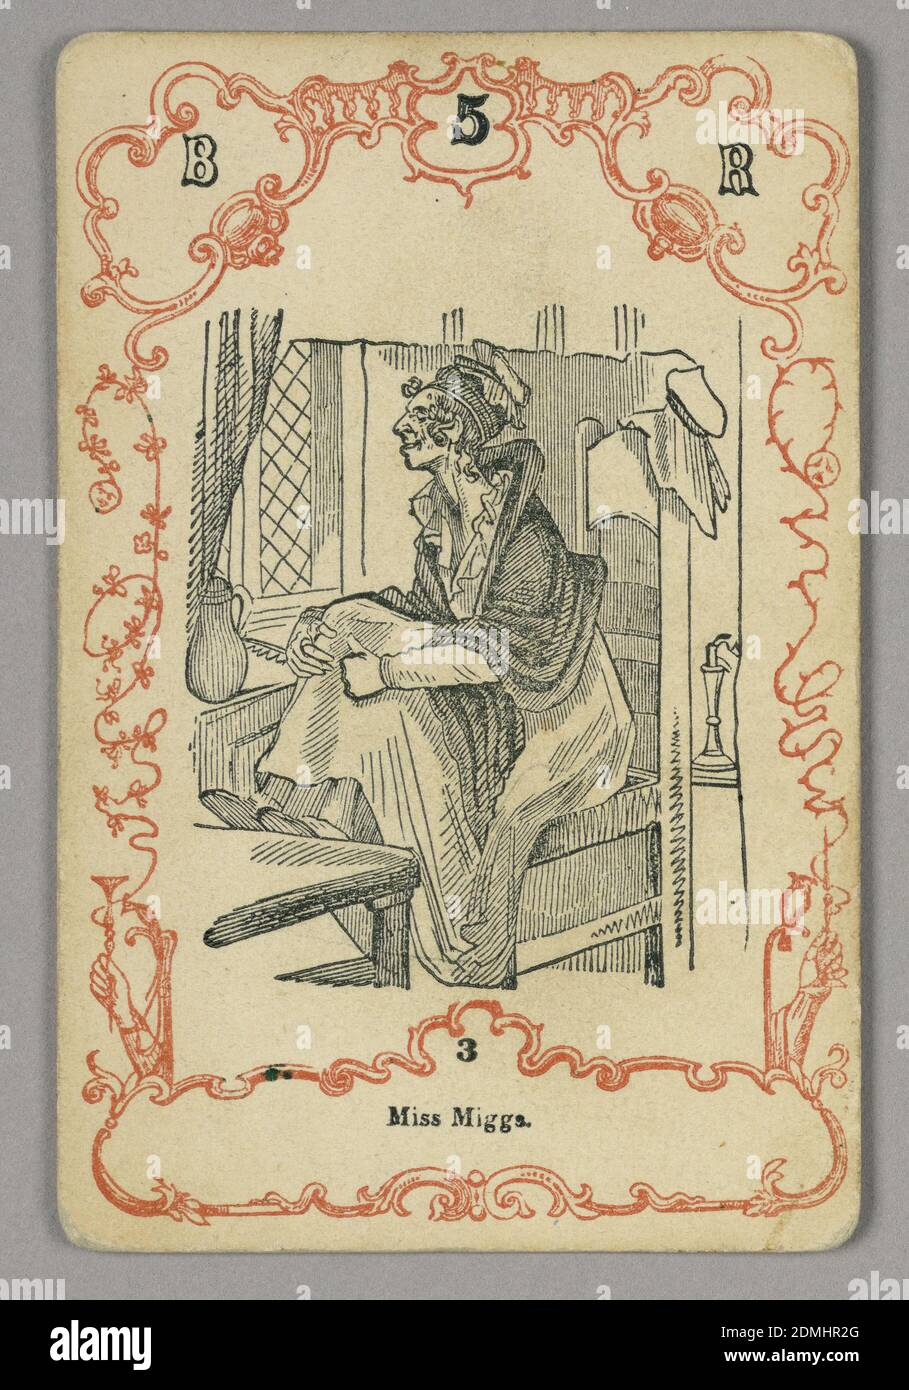 Carte à jouer, encre rouge et noire, papier, carte numérotée en haut: B 5 R; en dessous de l'image centrale: 3, Europe, ca. 1855, carte à jouer Banque D'Images